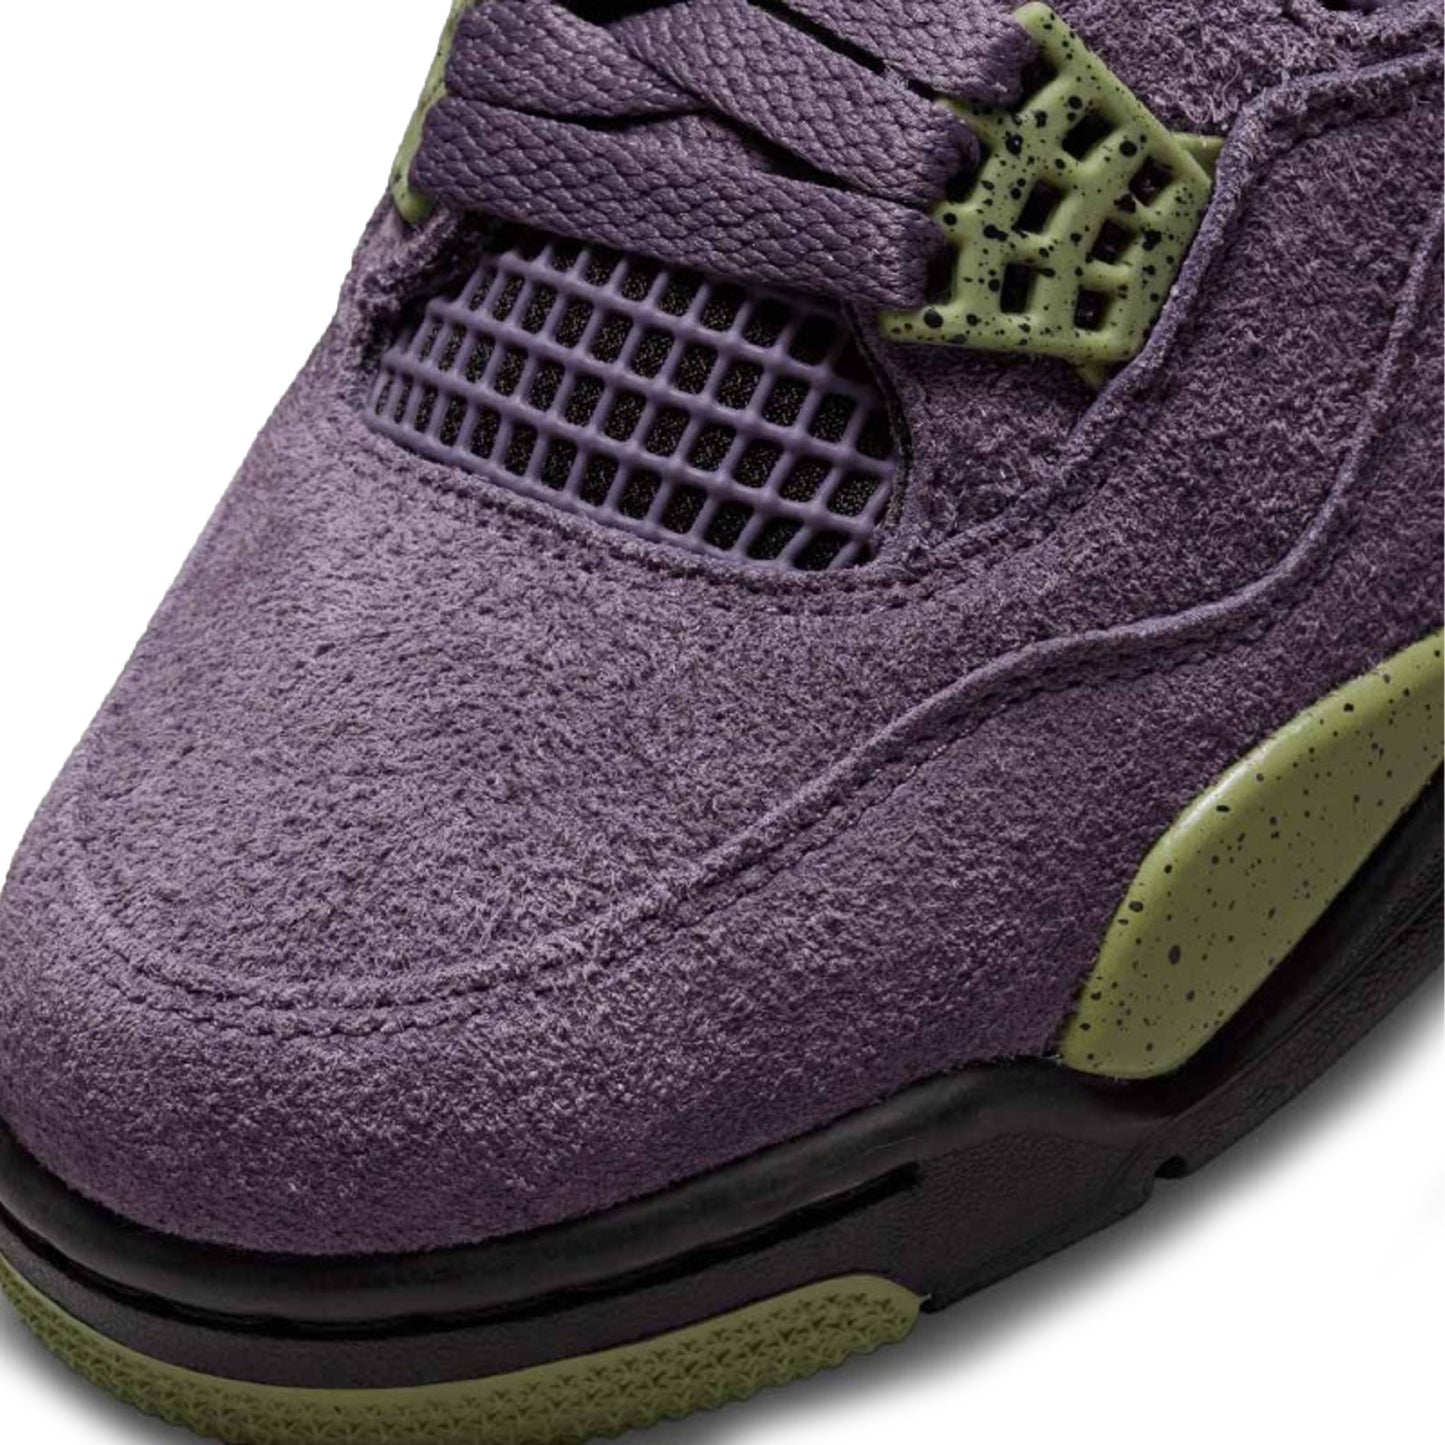 Jordan 4 Retro Canyon Purple (W)